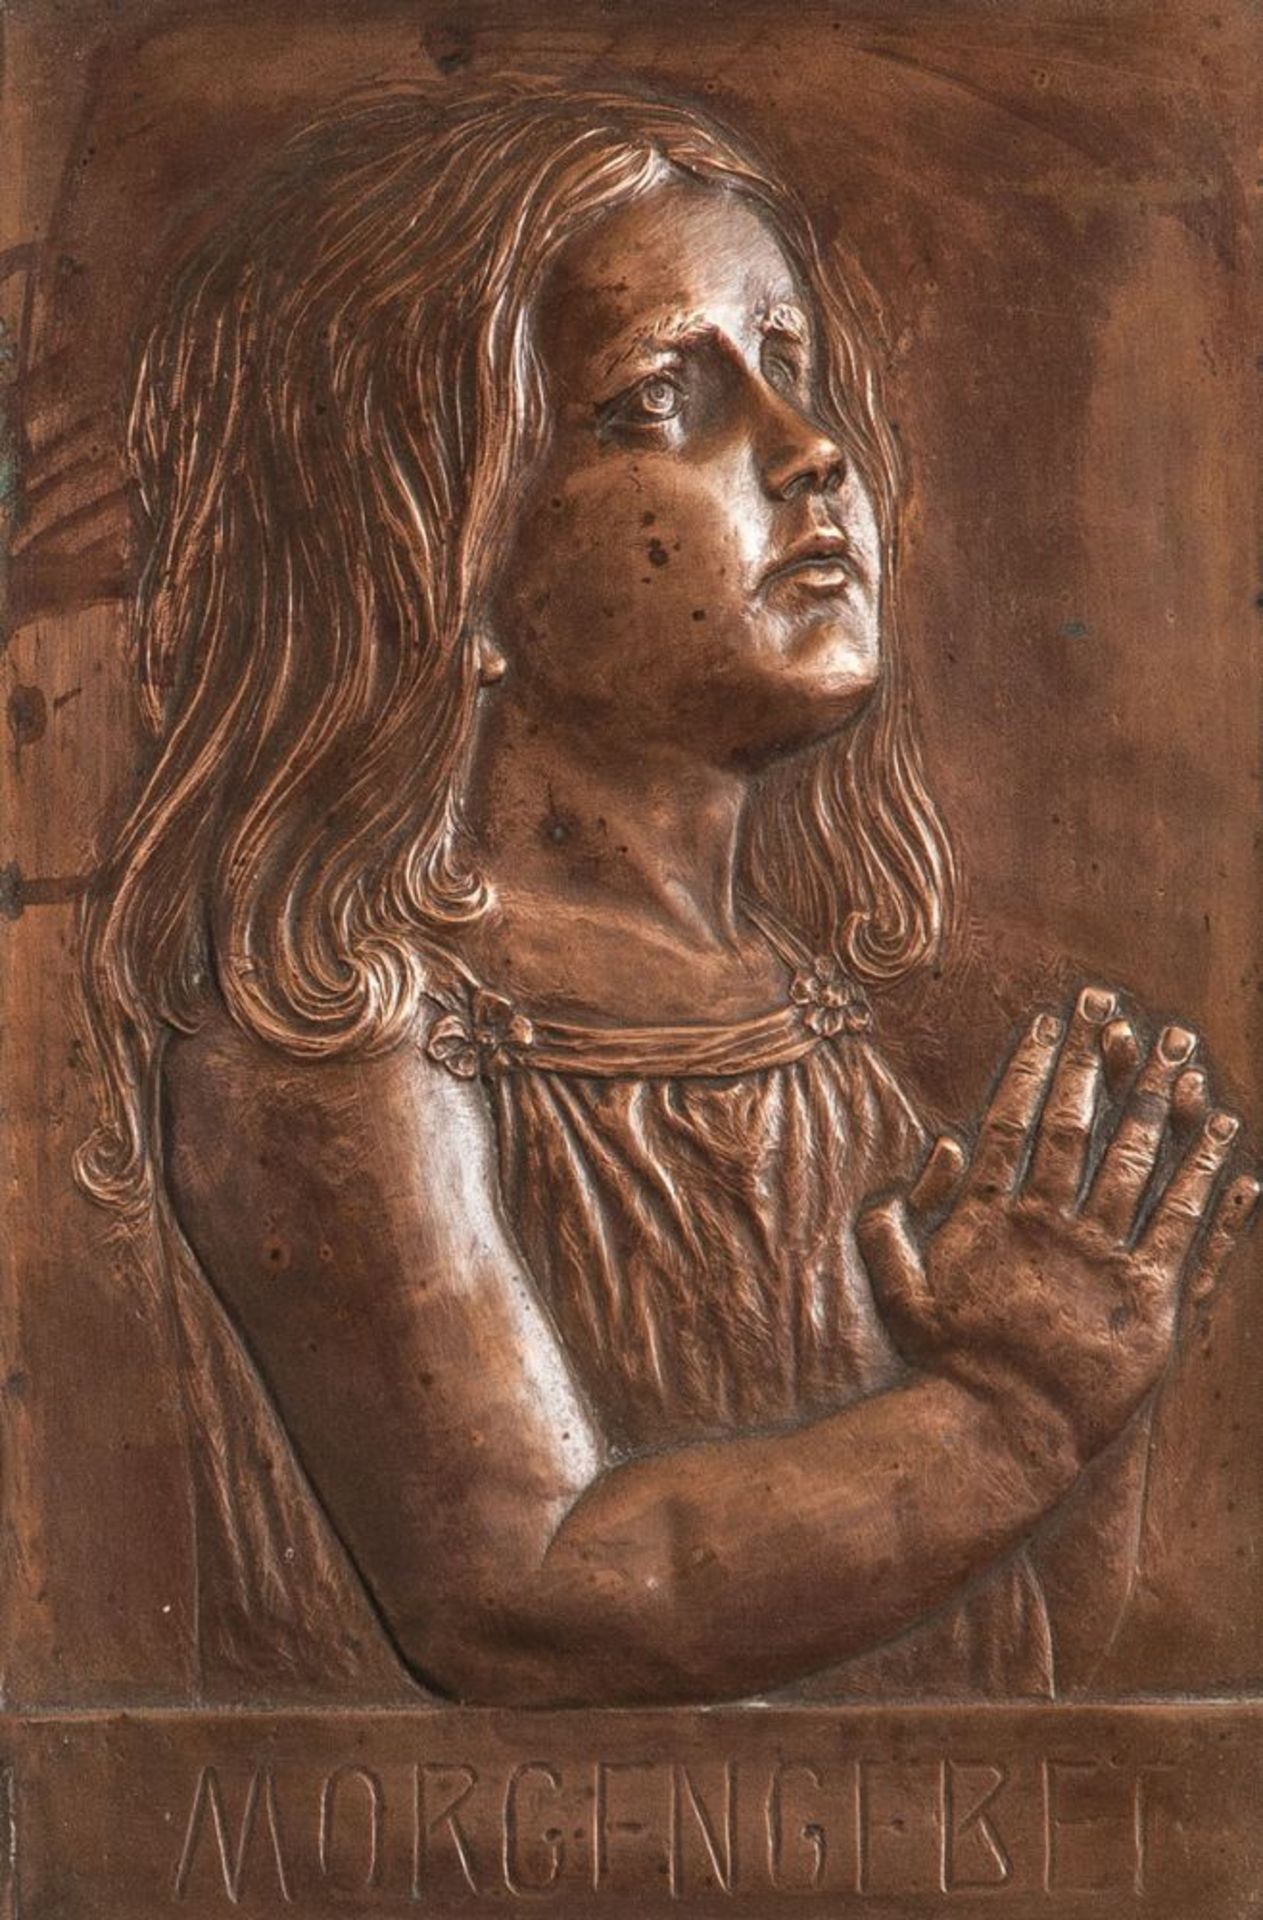 Kupferplatte, relief. Darst. eines betenden Mädchens im Profil, u. bez. "Morgengebet", schw.